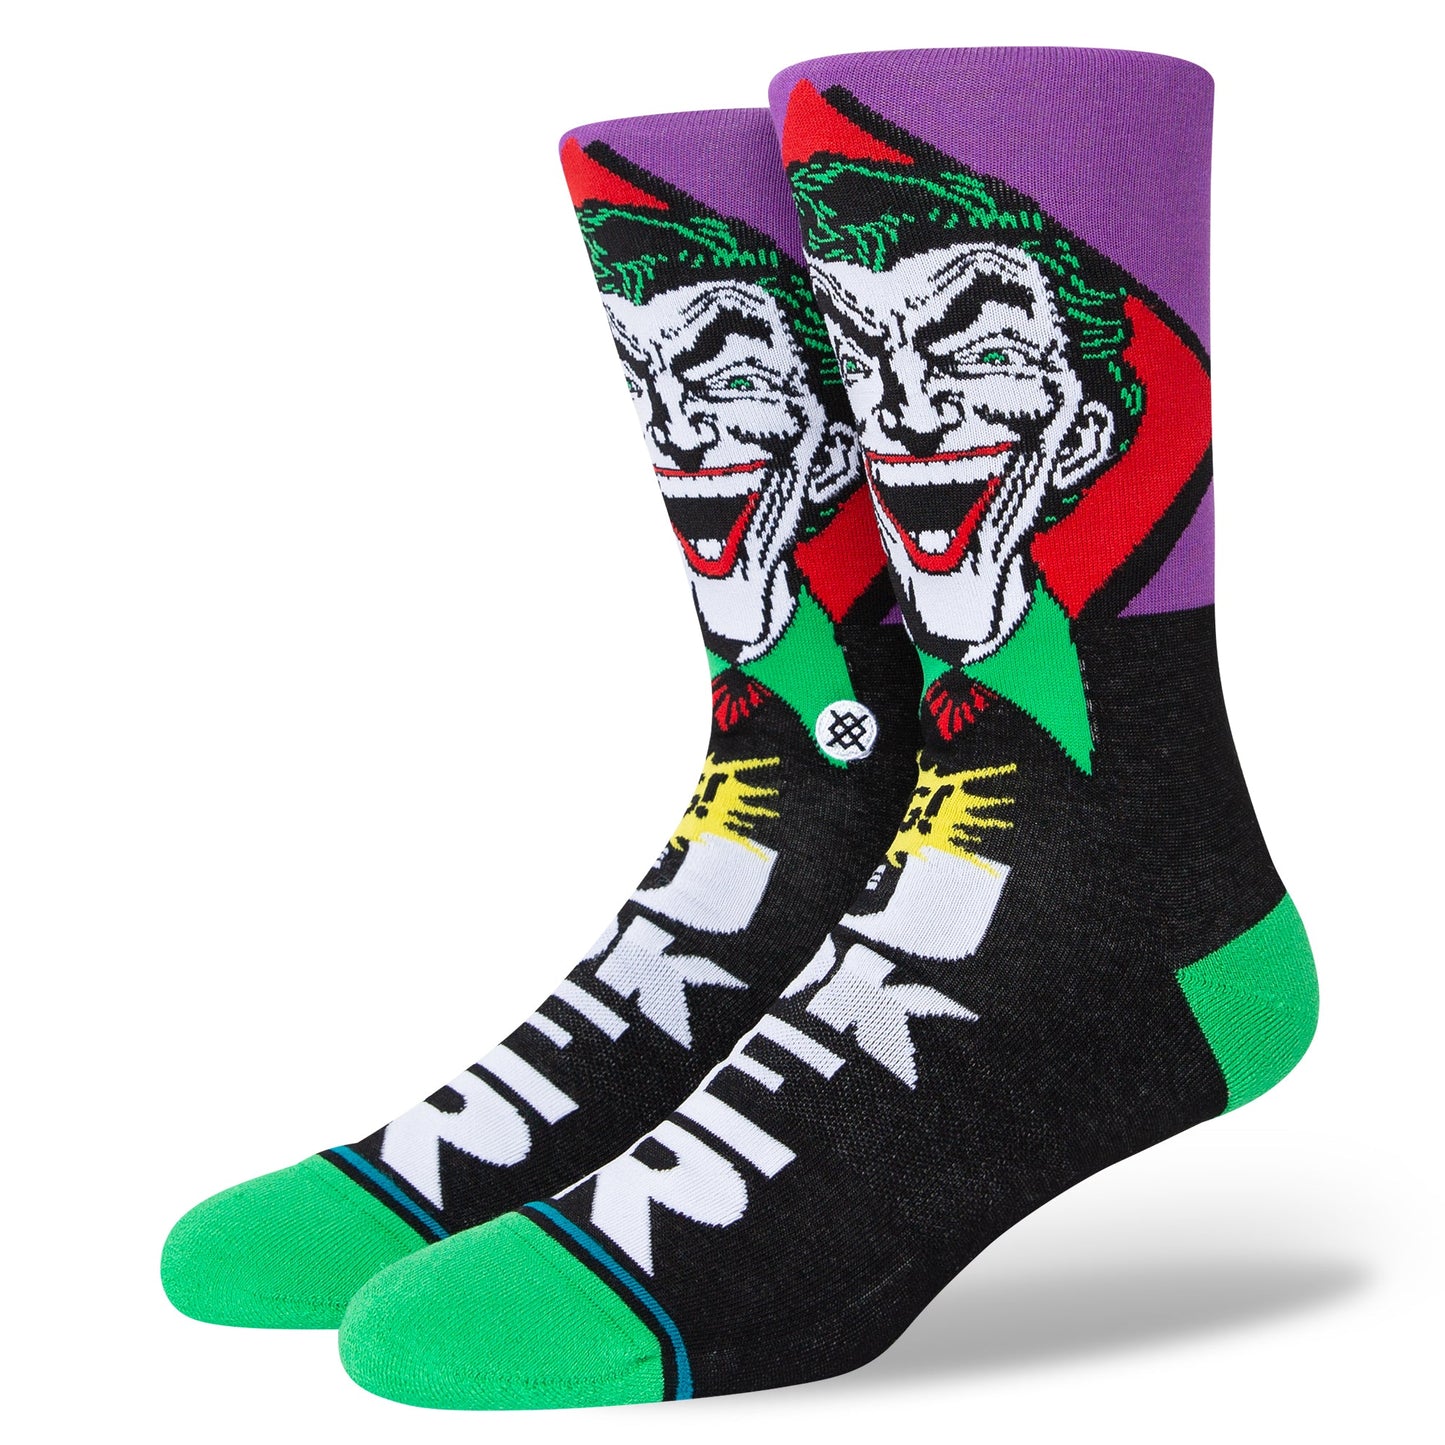 Chaussettes mi-mollet noires Joker Comic de Stance